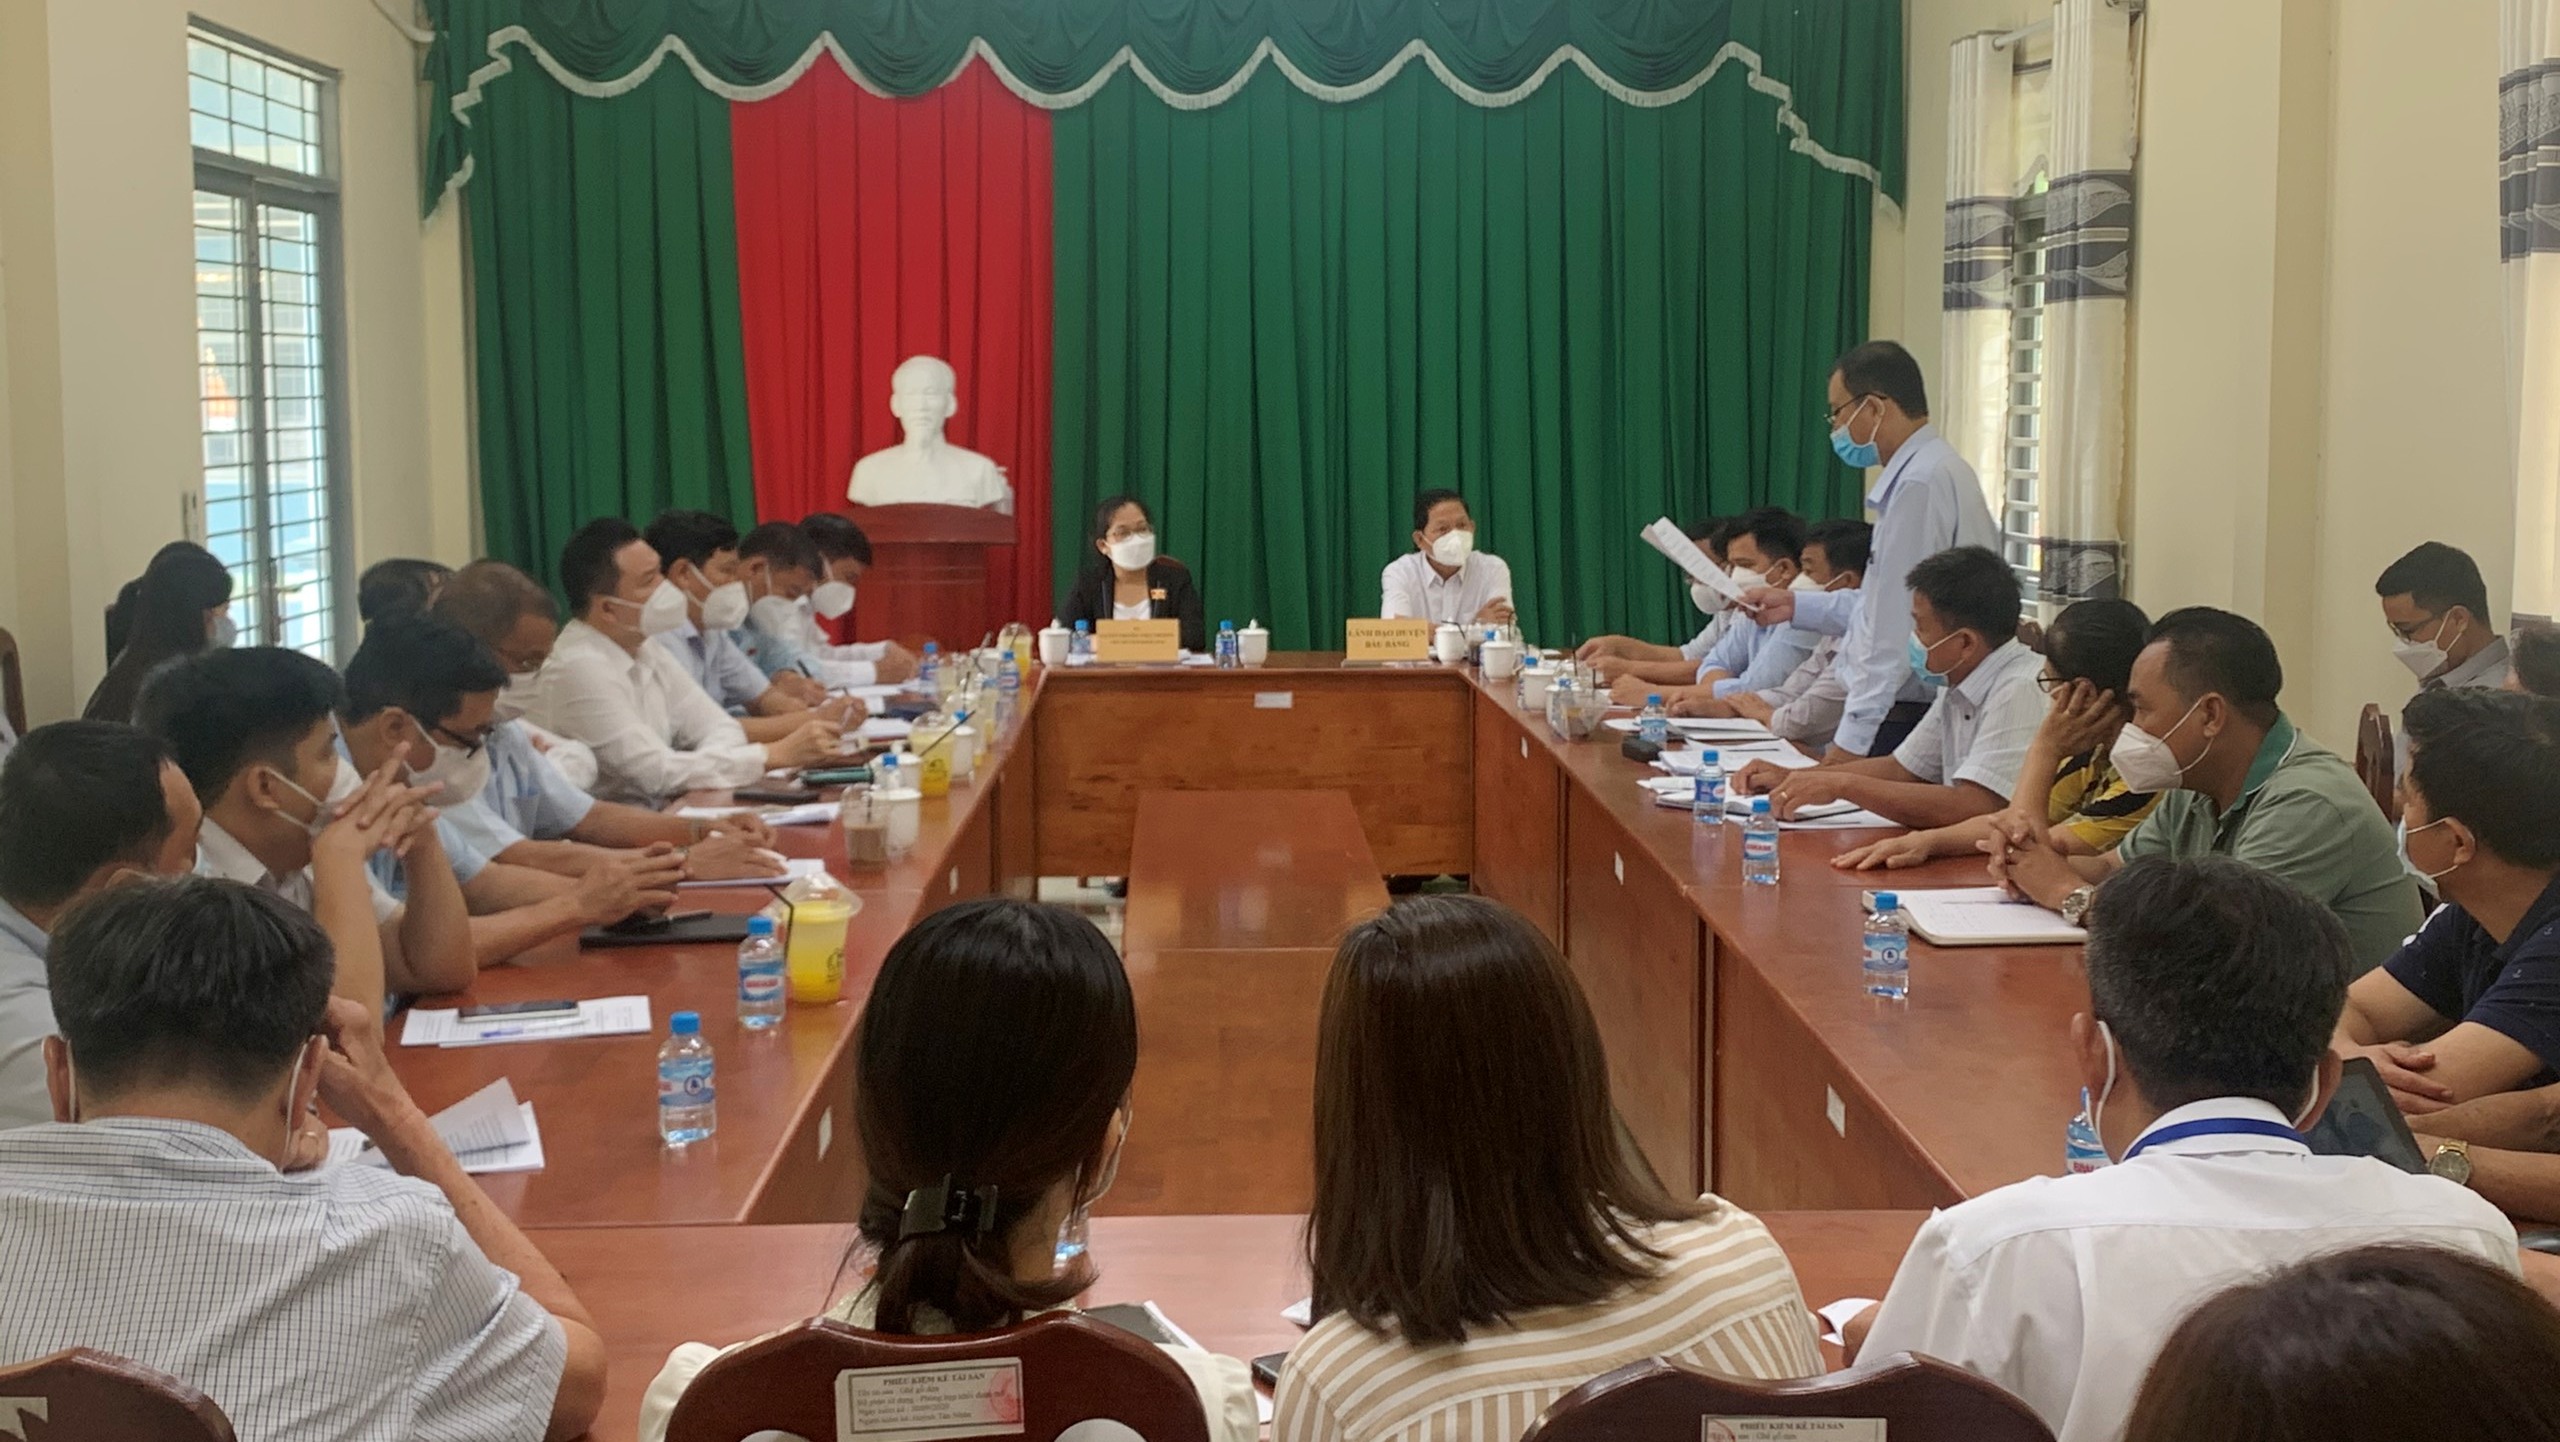 Đoàn Giám sát HĐND tỉnh làm việc về hỗ trợ do ảnh hưởng bởi đại dịch Covid-19 tại thị trấn Lai Uyên